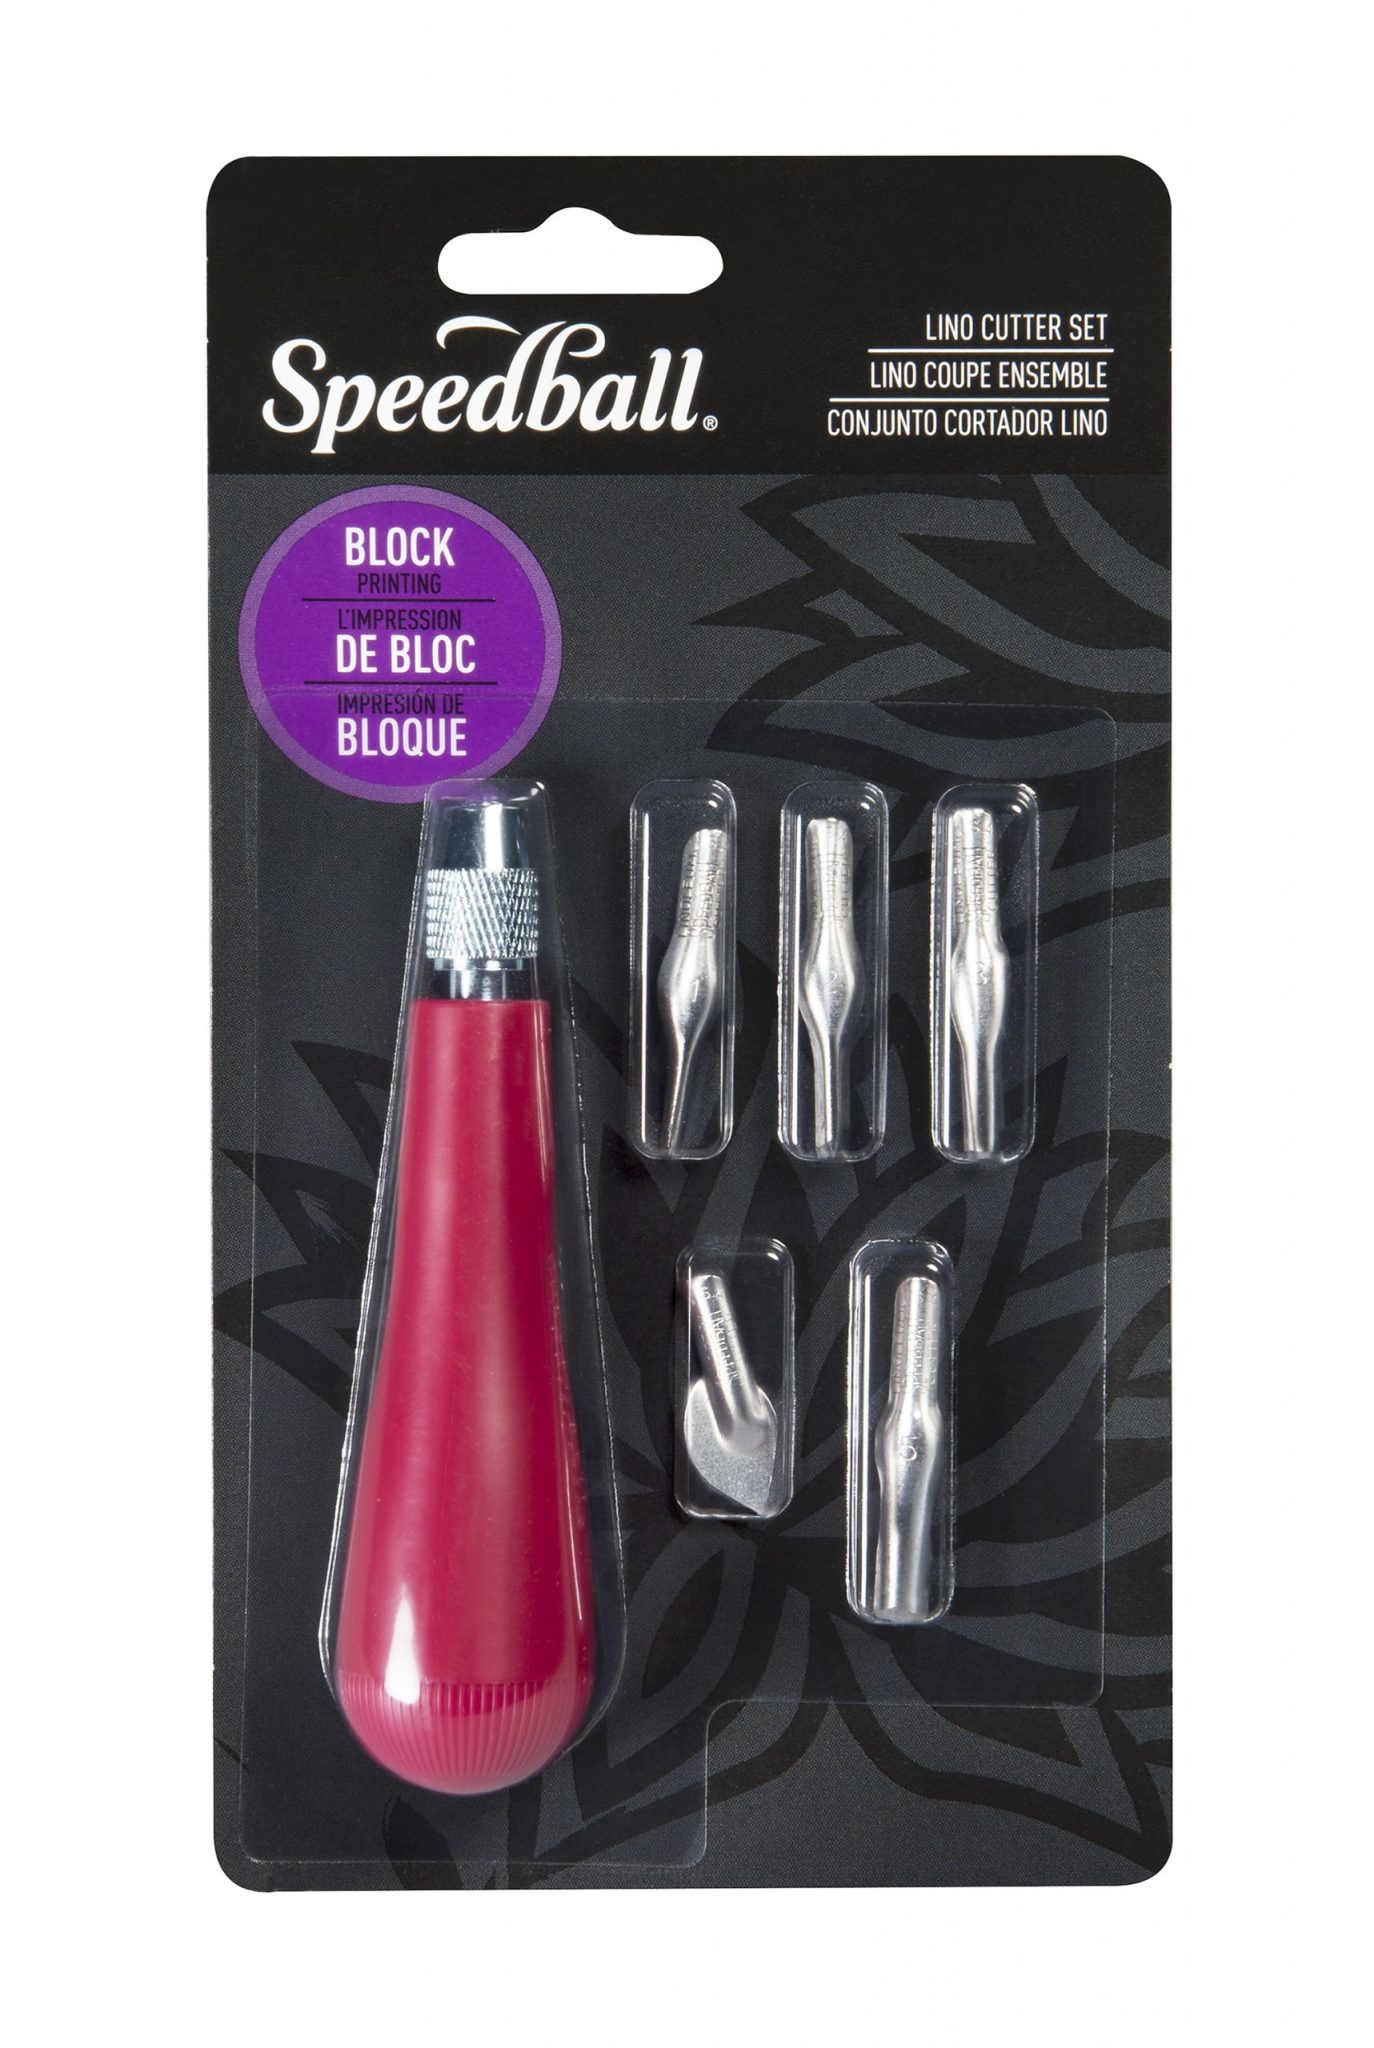 Speedball Linoleum Cutter Assortment 2